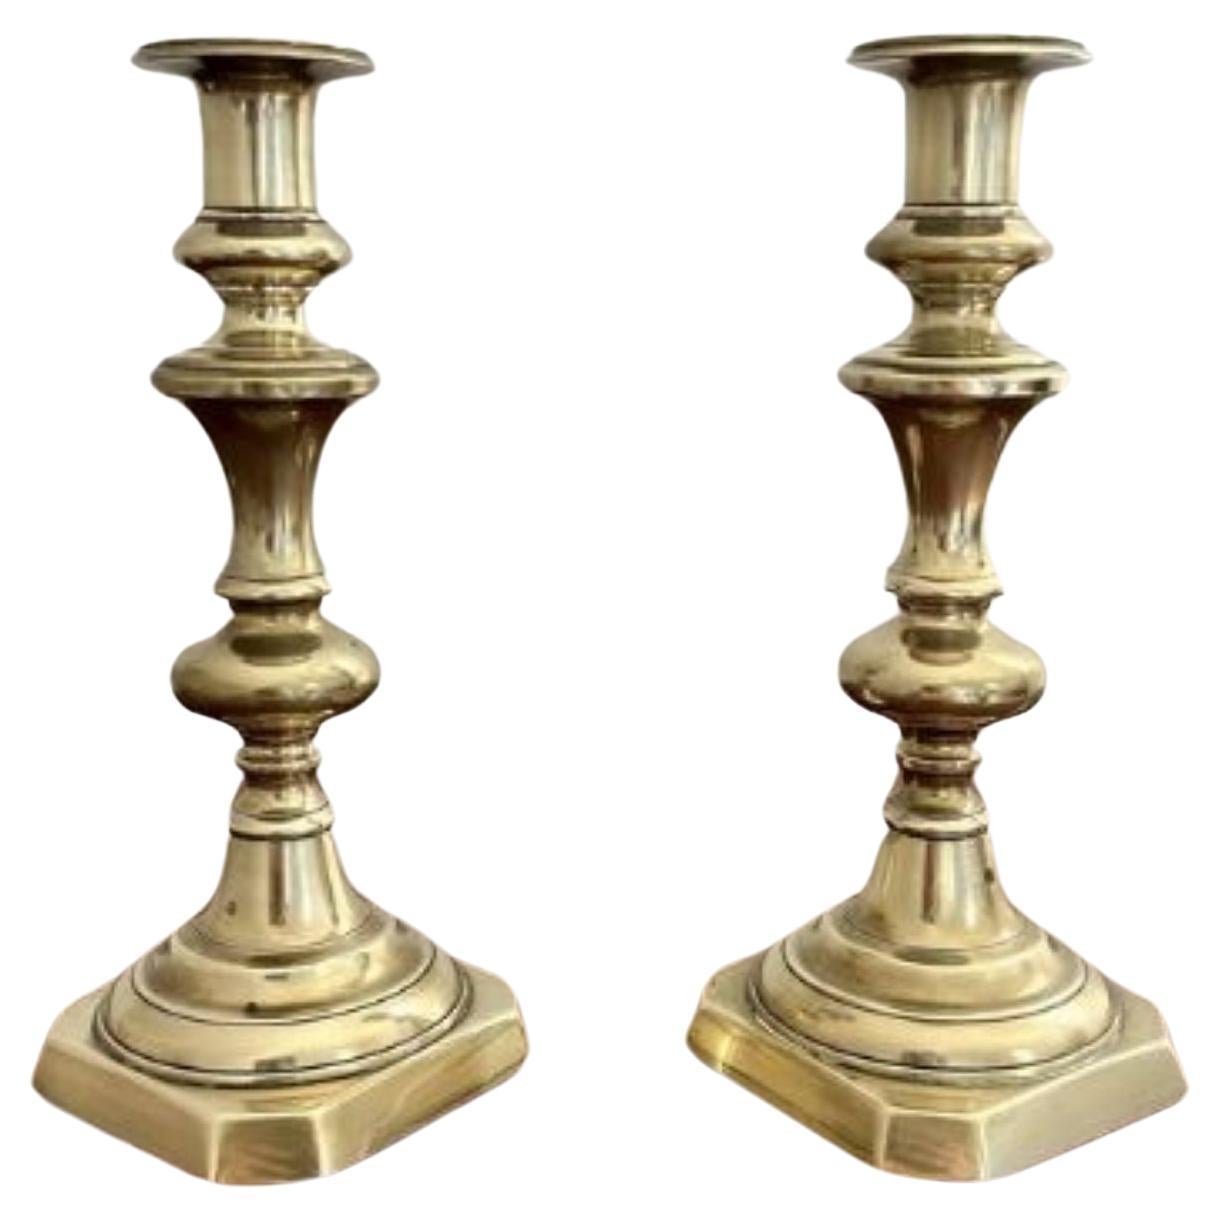 Paire de chandeliers anciens en laiton de l'époque victorienne